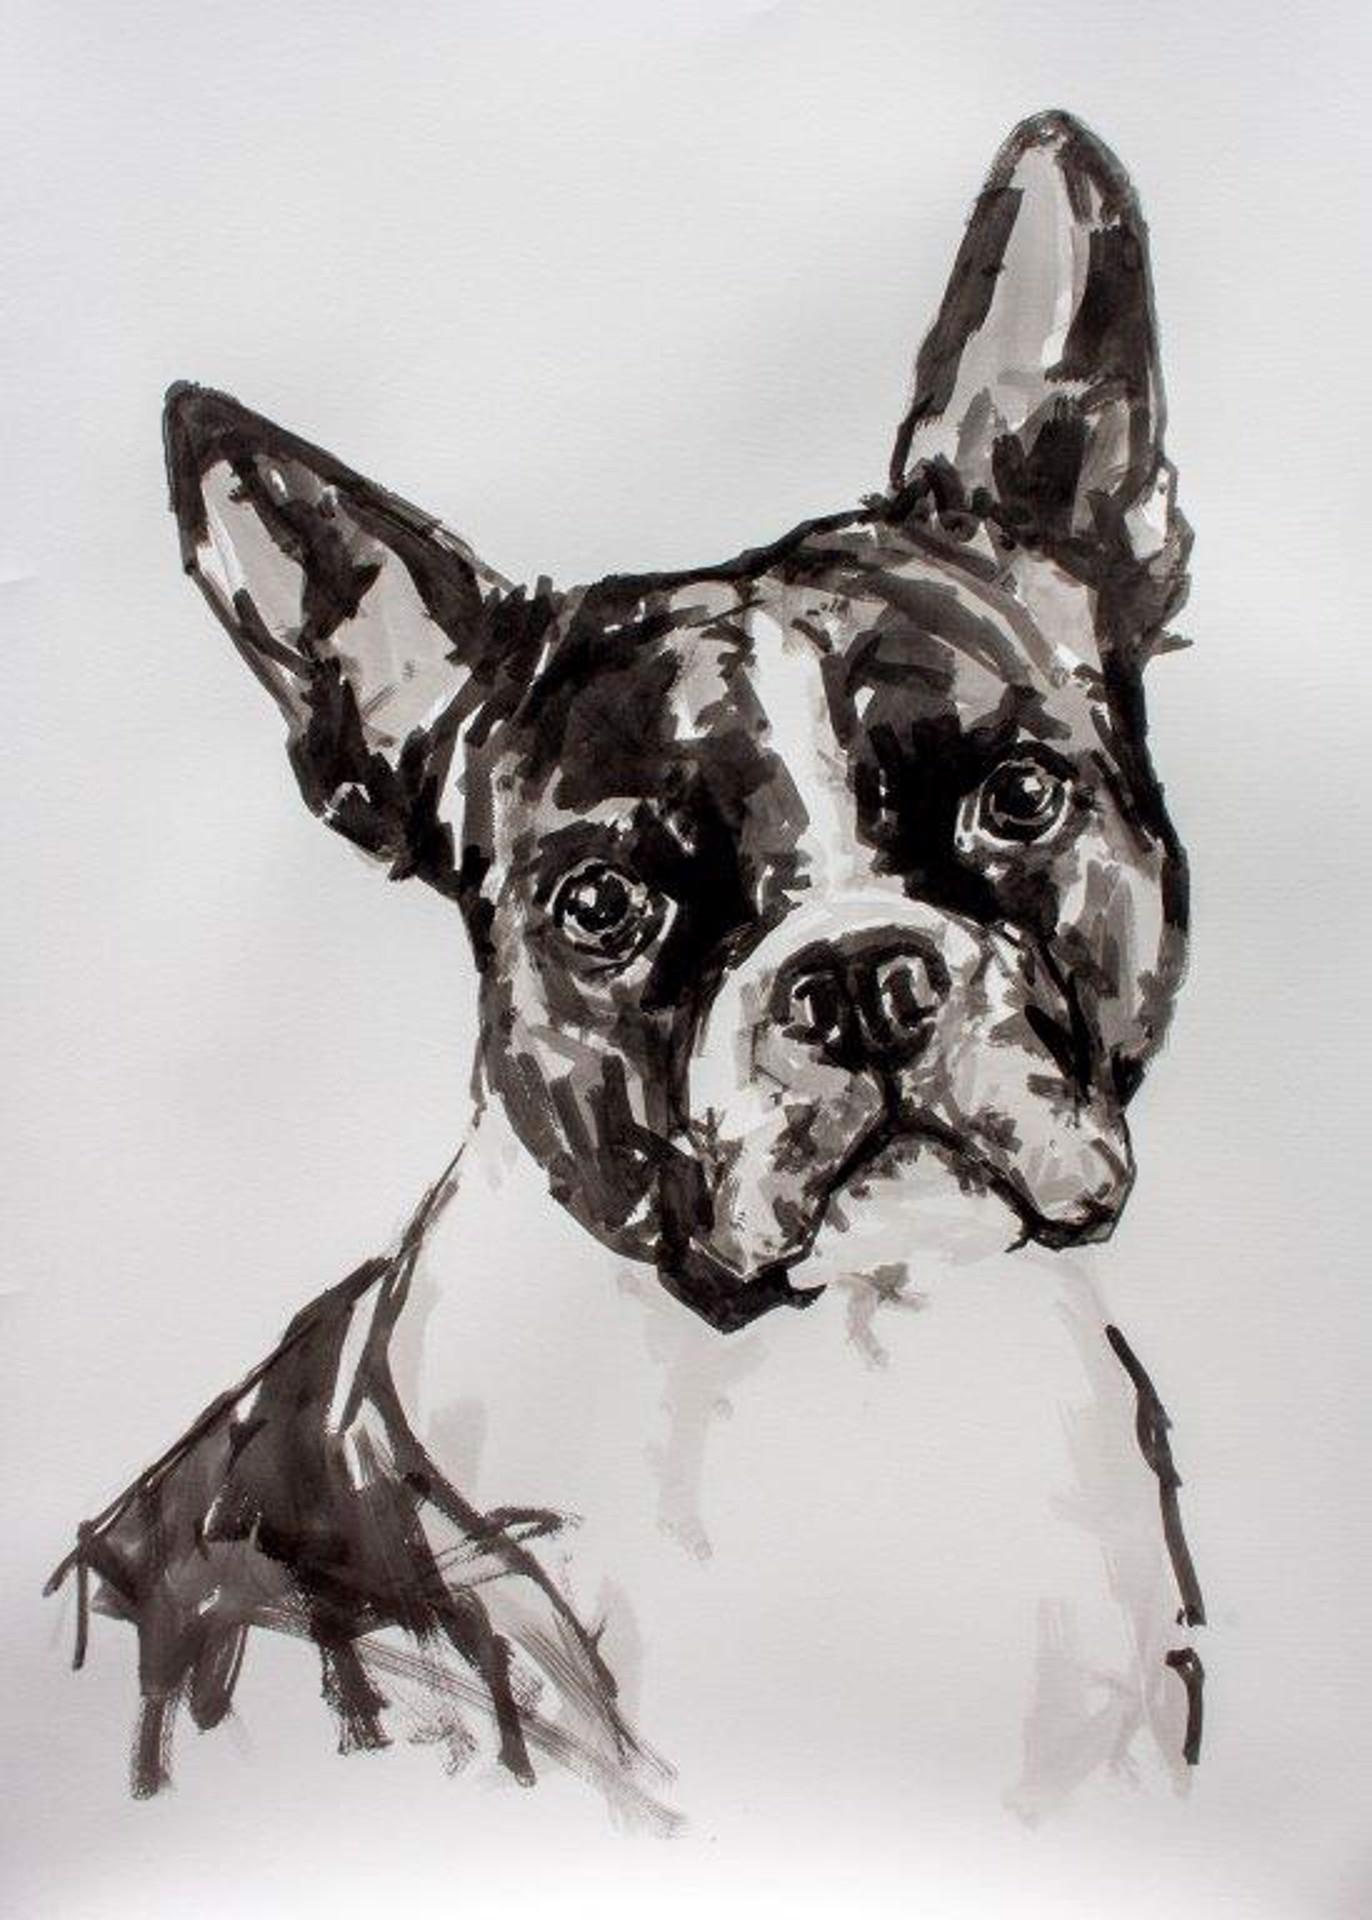 Ian Mason Animal Painting – Boston Terrier, großes zeitgenössisches, minimalistisches Porträt eines Hundes in Schwarz auf Papier